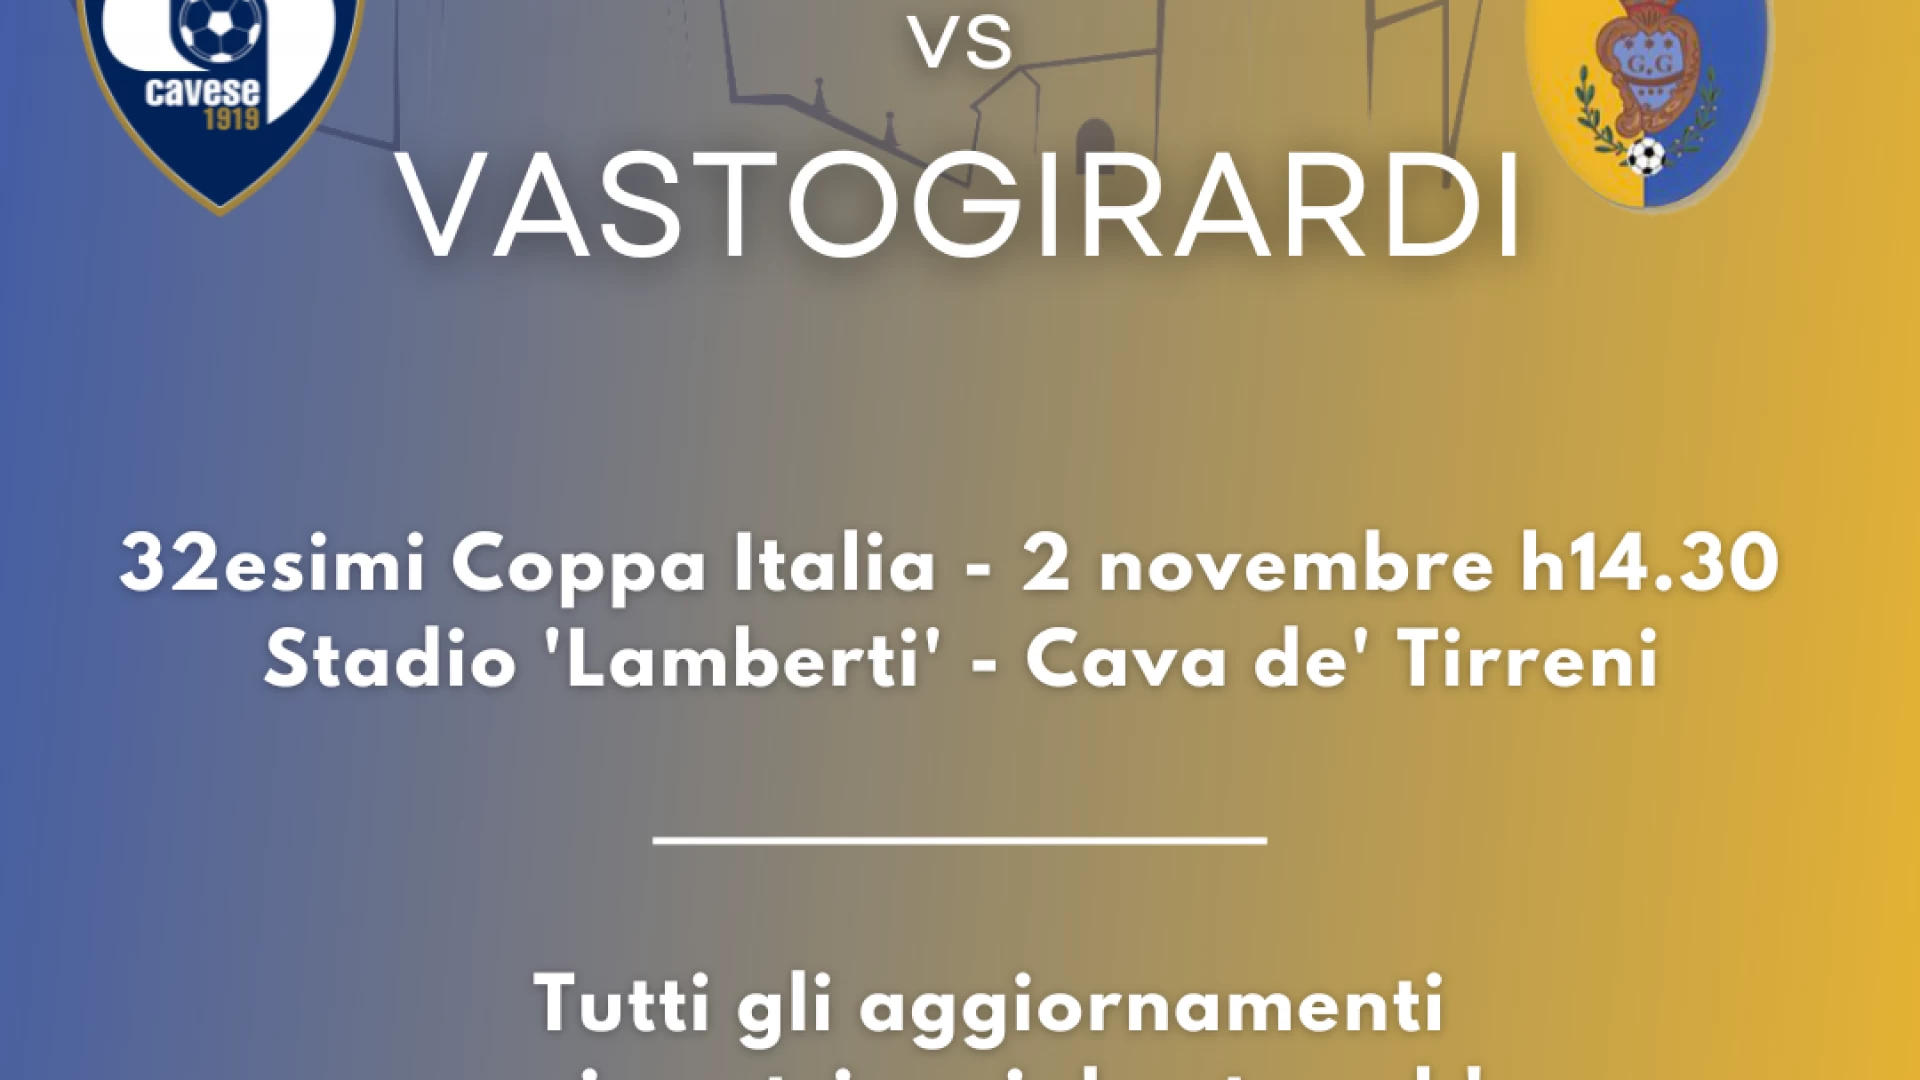 Coppa Italia serie D: IL Vastogirardi pesca la Cavese. Match in programma il 2 novembre.